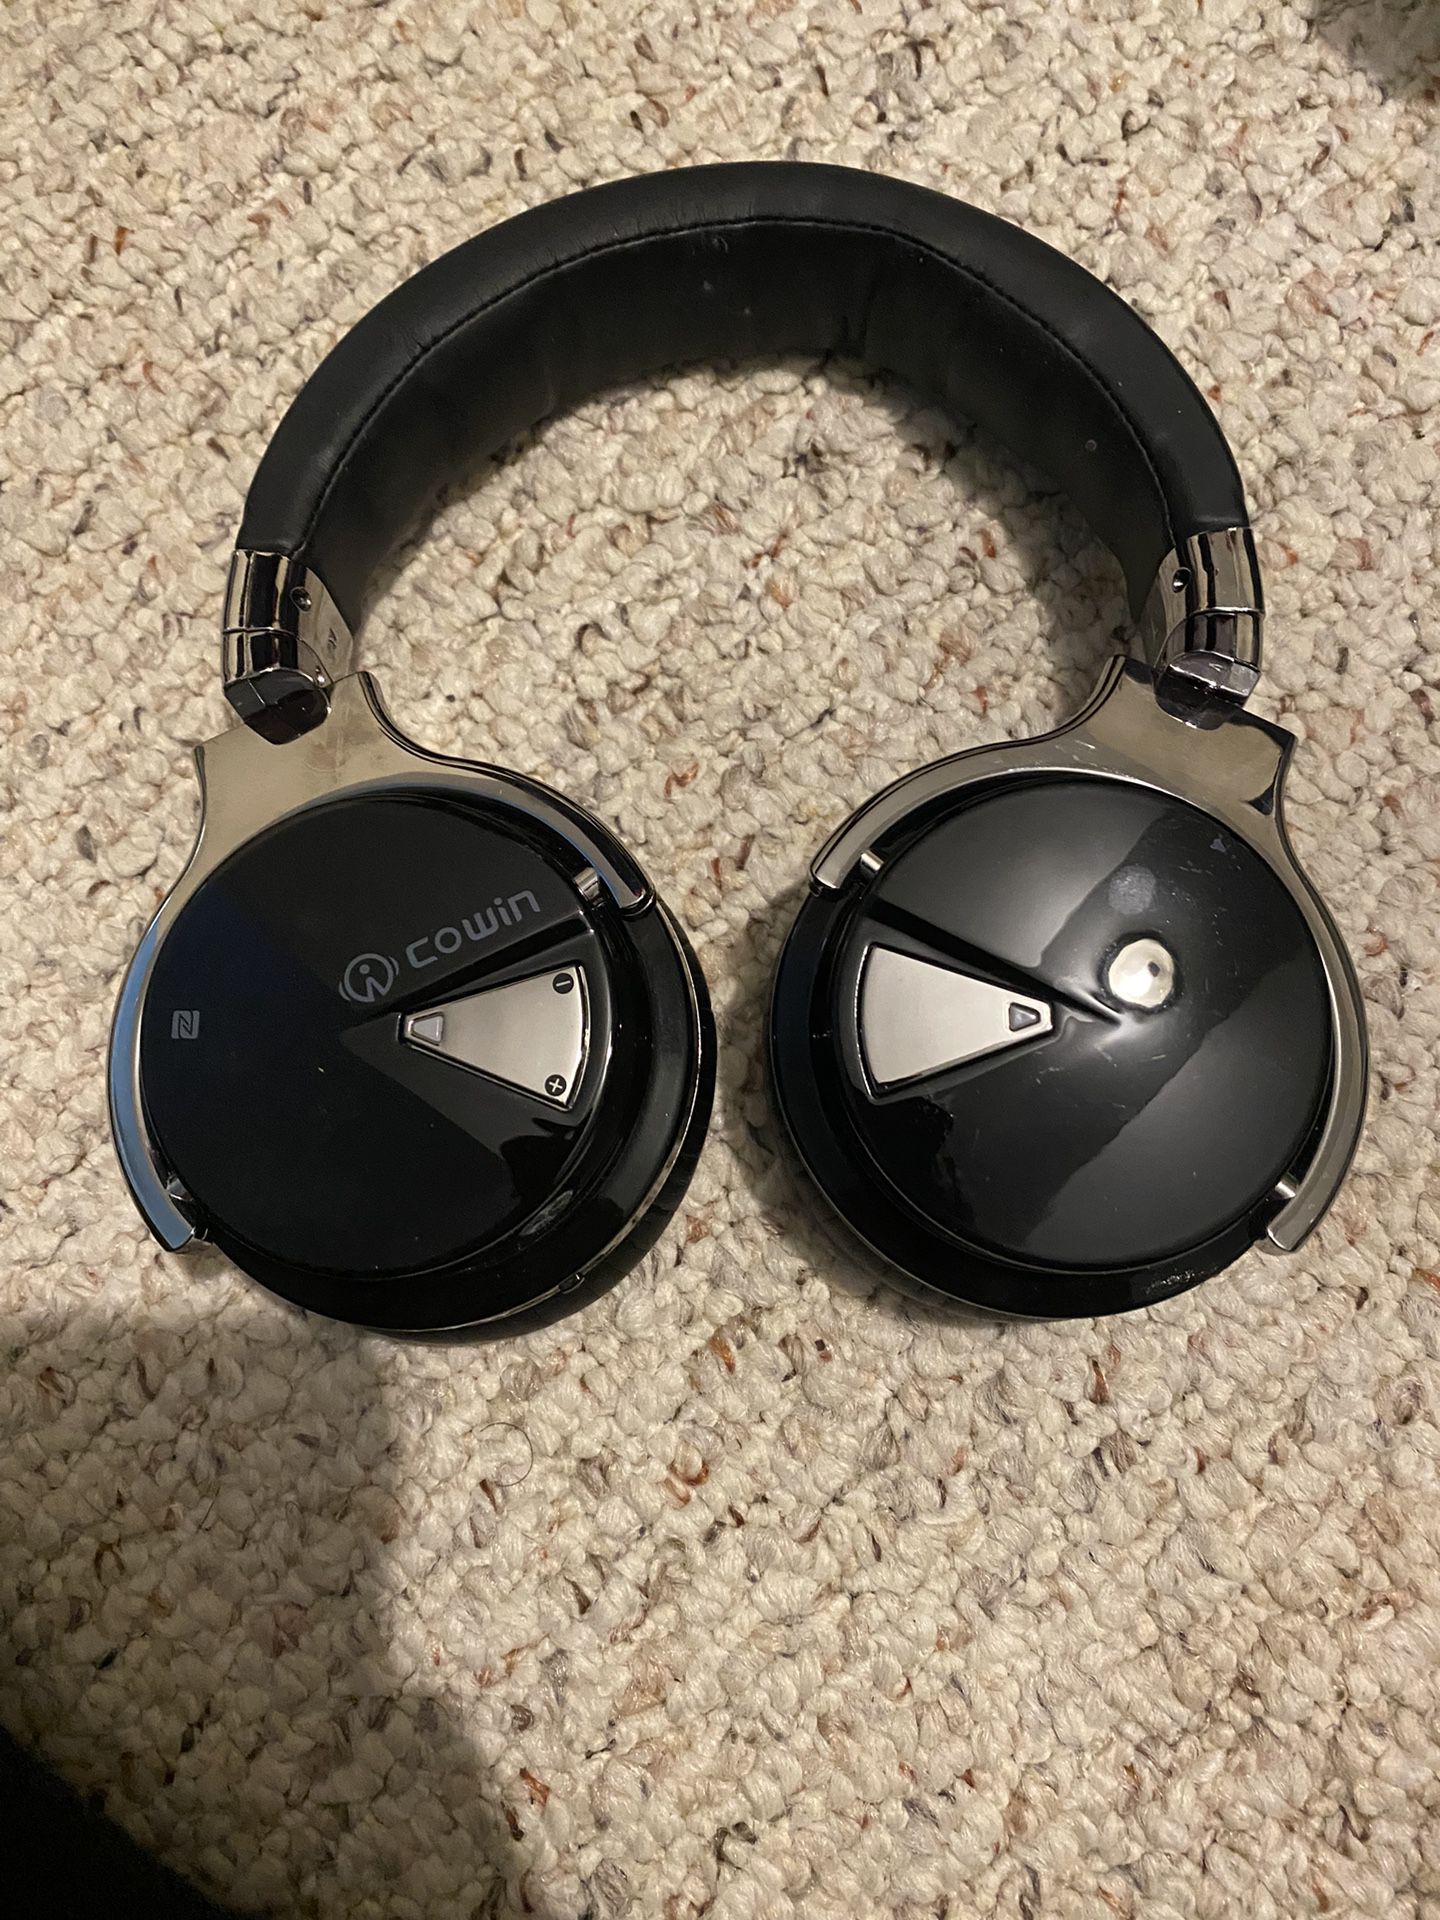 Cowin Headphones($30 Retail)